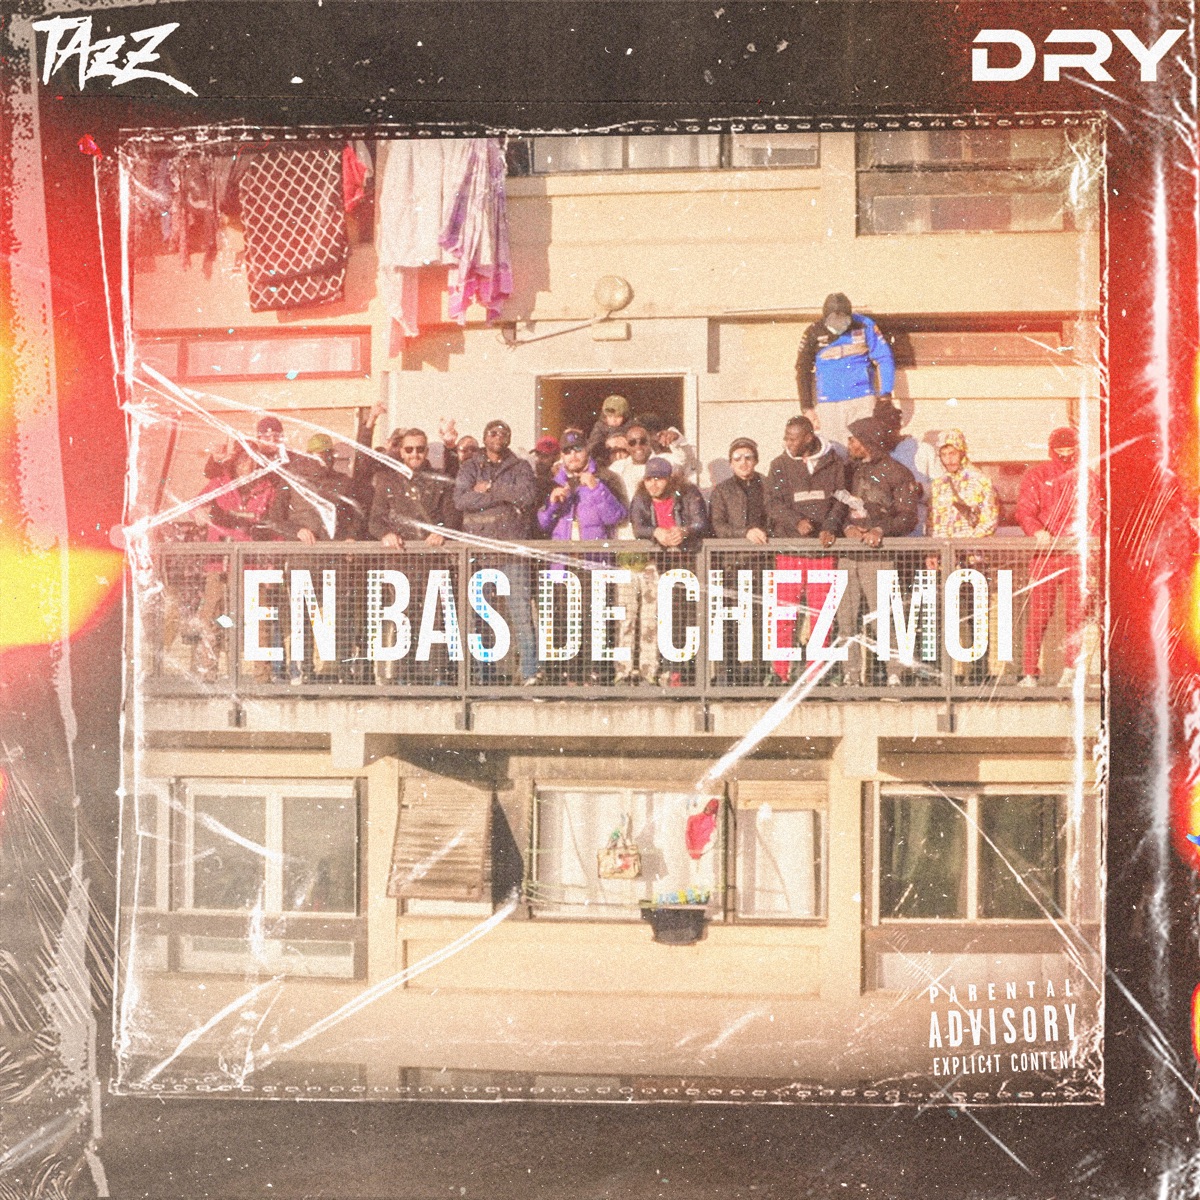 On fait pas semblant (feat. Dr Berize) - Single - Album by Dry - Apple Music